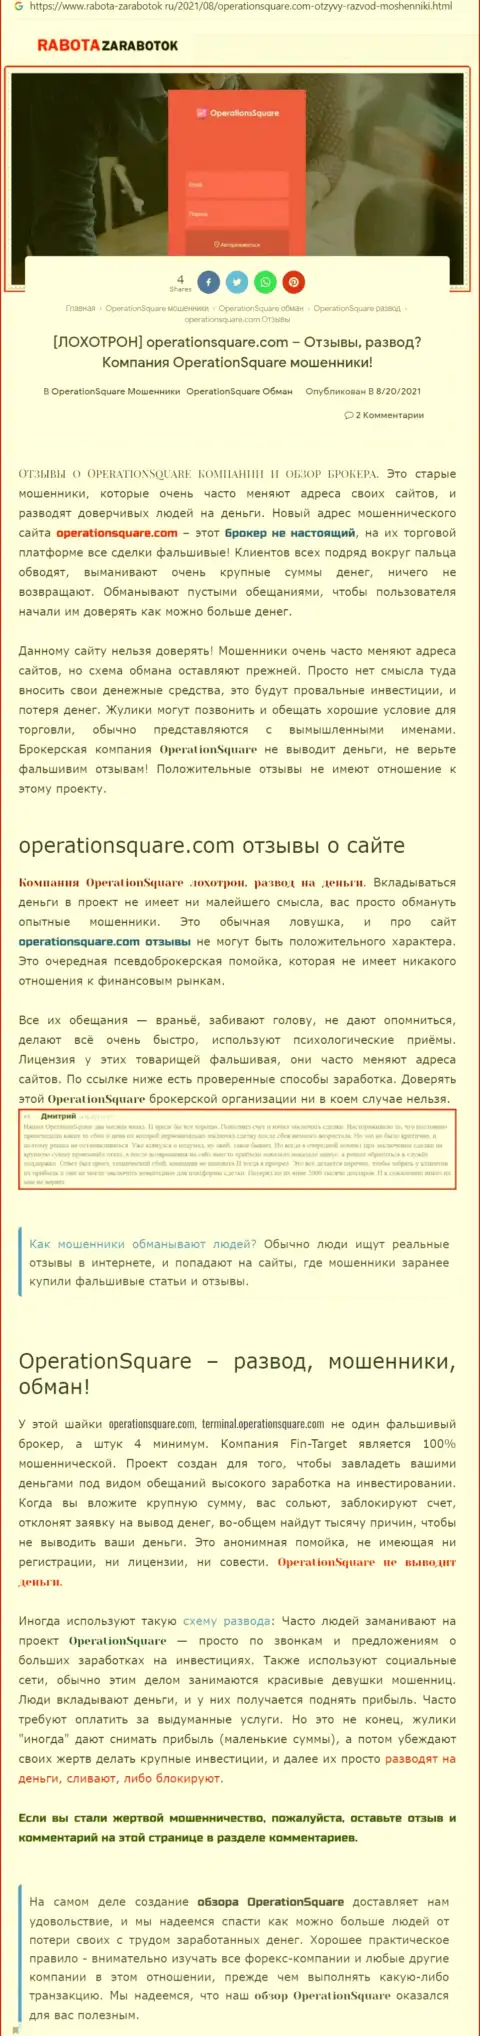 OperationSquare - это МОШЕННИКИ !!! Схемы облапошивания и объективные отзывы потерпевших